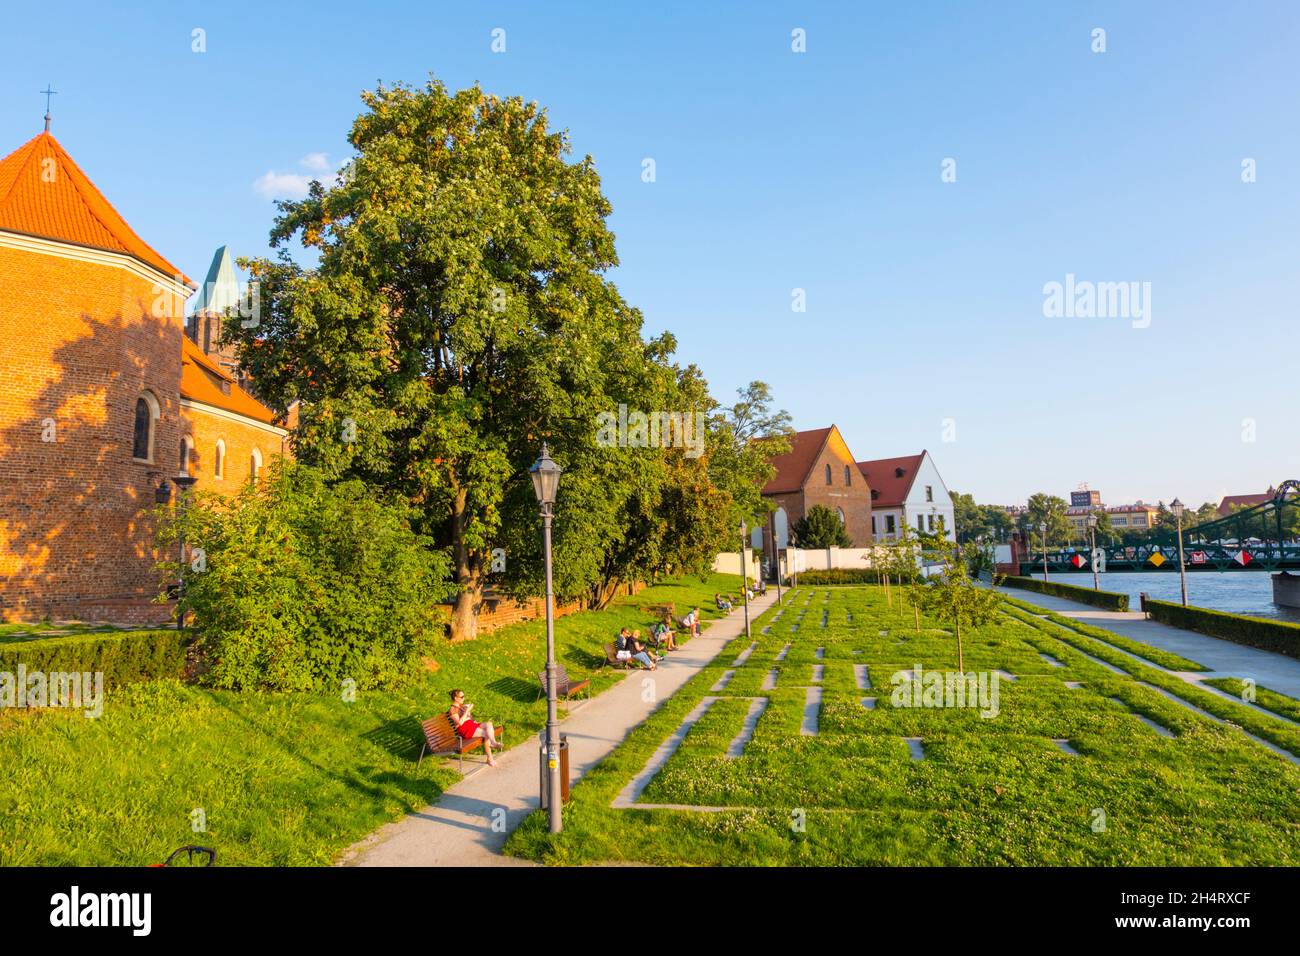 Labirynt w trawie, labyrint park, Ostrów Tumski, Cathedral Island, Wroclaw, Poland Stock Photo